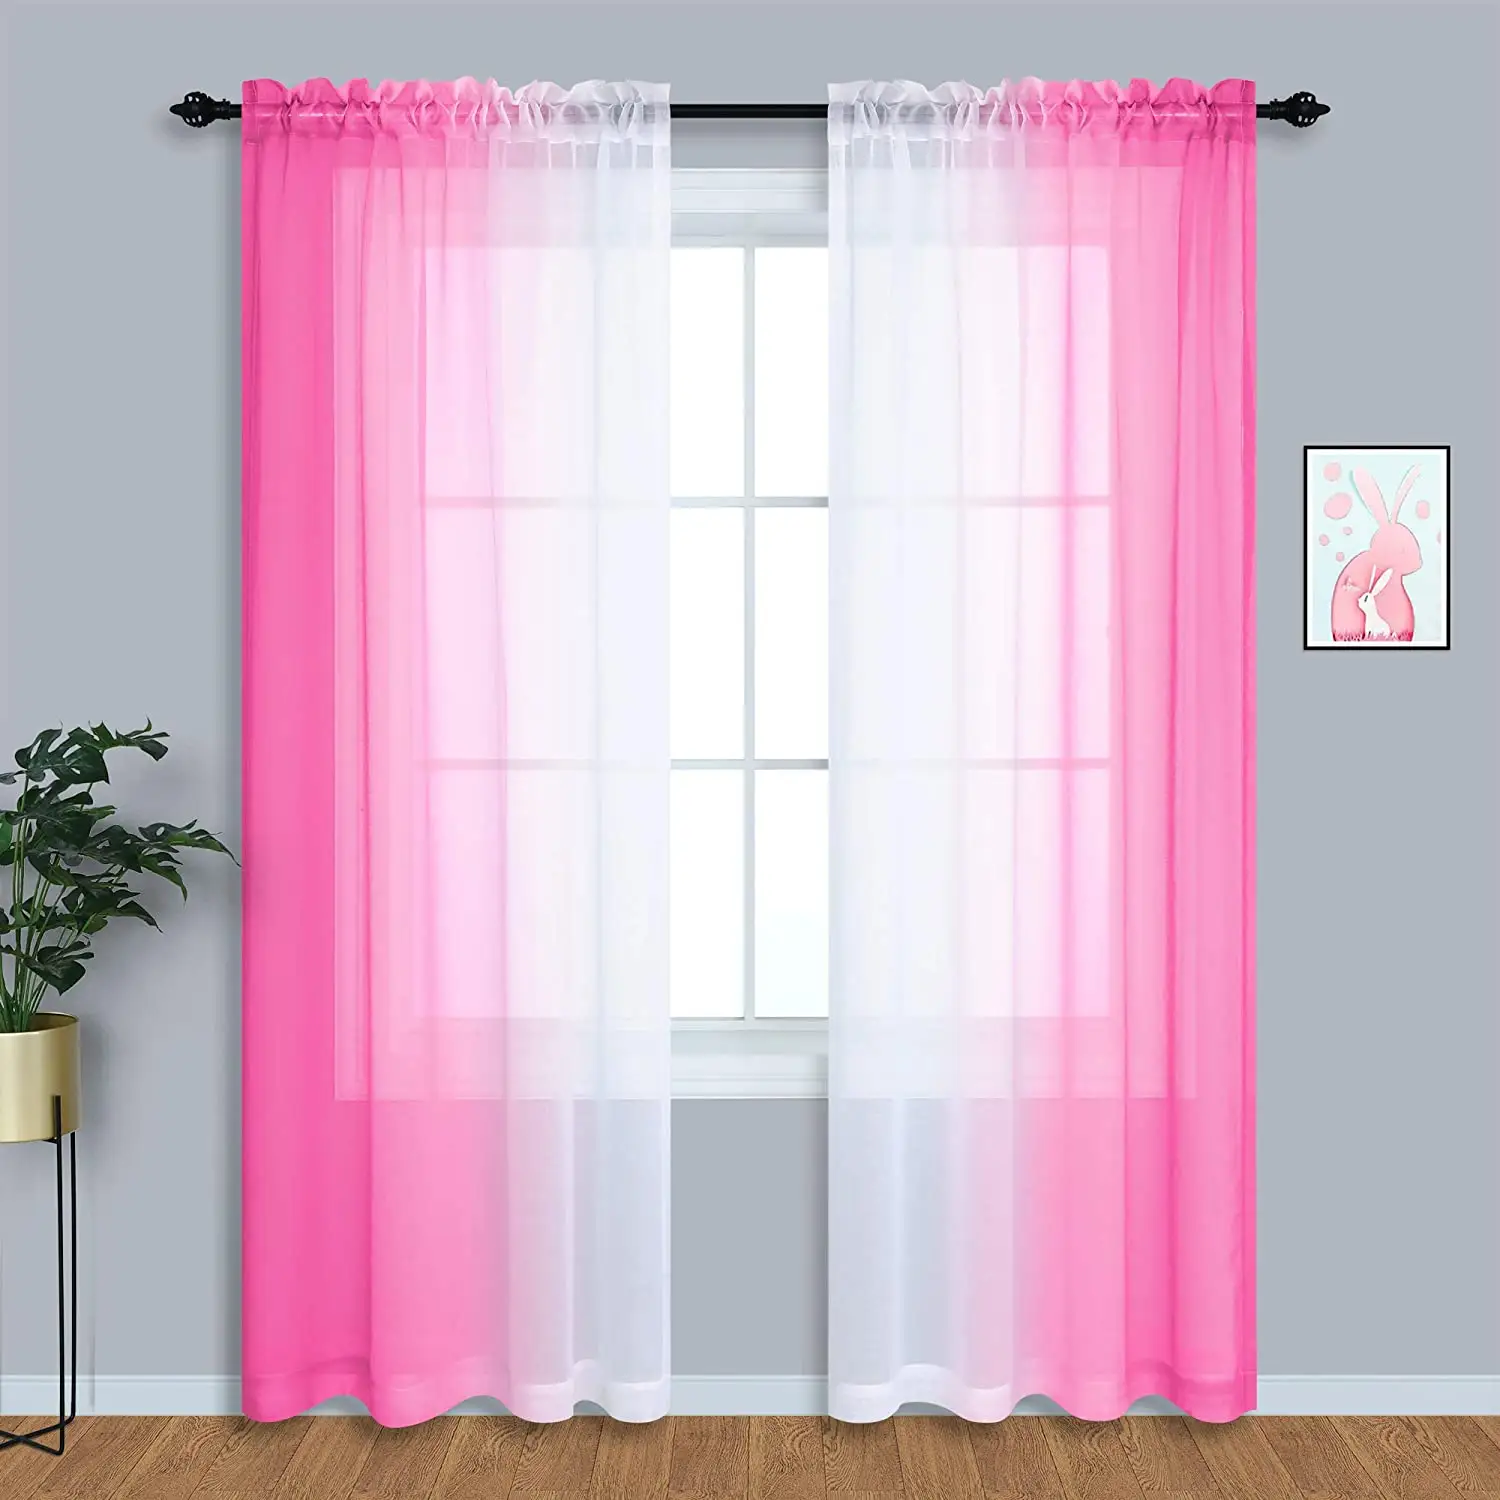 التين فتاة ديكور غرفة نوم أومبير شير ضوء الوردي الستائر للبنات غرفة زينة الأبيض الوردي 42x84 بوصة طول